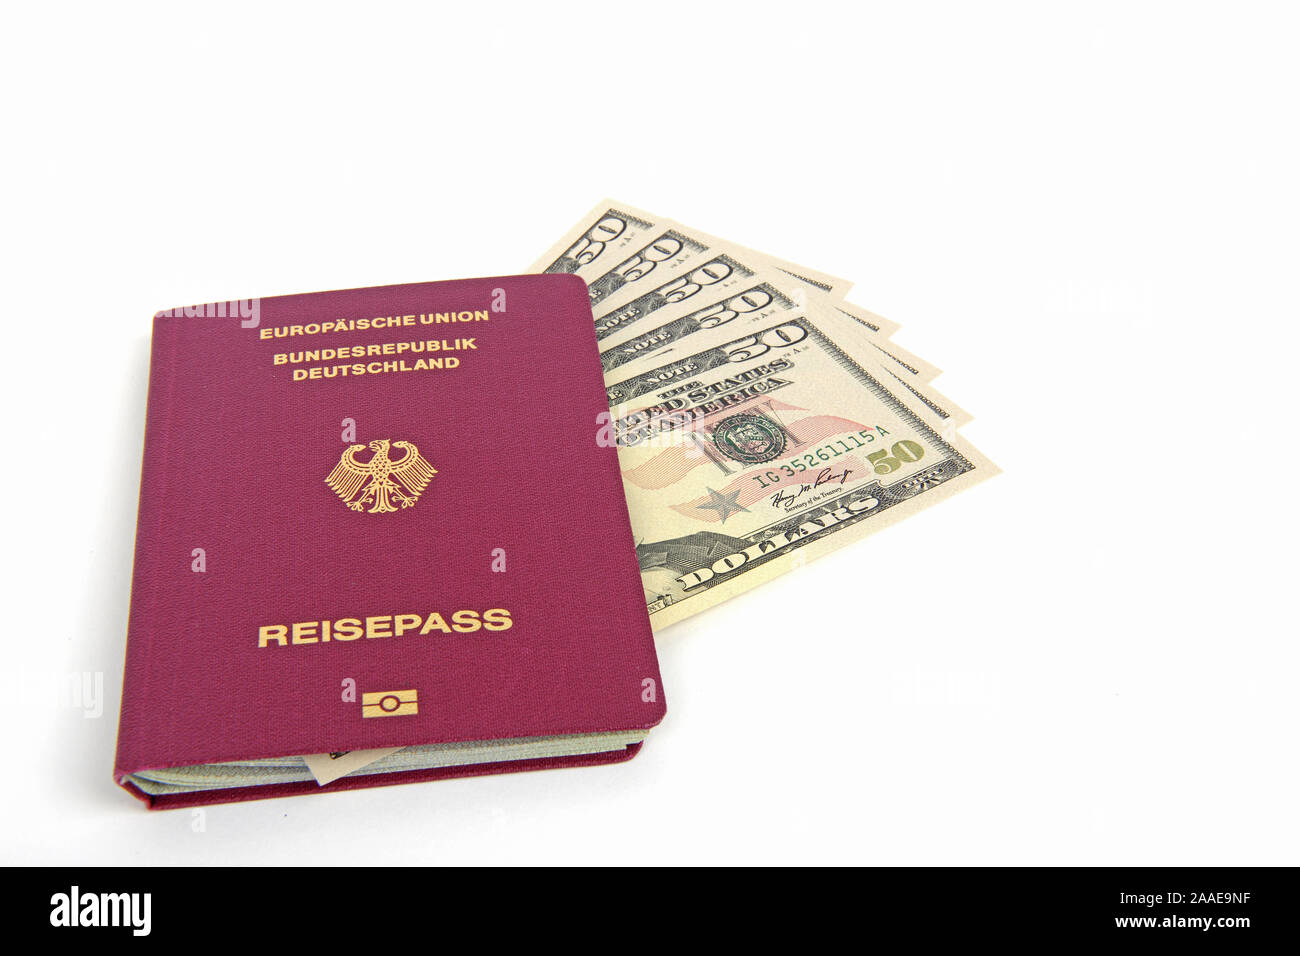 Mehrere 50 Dollarscheine, Reisepass Bundesrepublik Deutschland, Symbolbild Reiseplanung Foto Stock